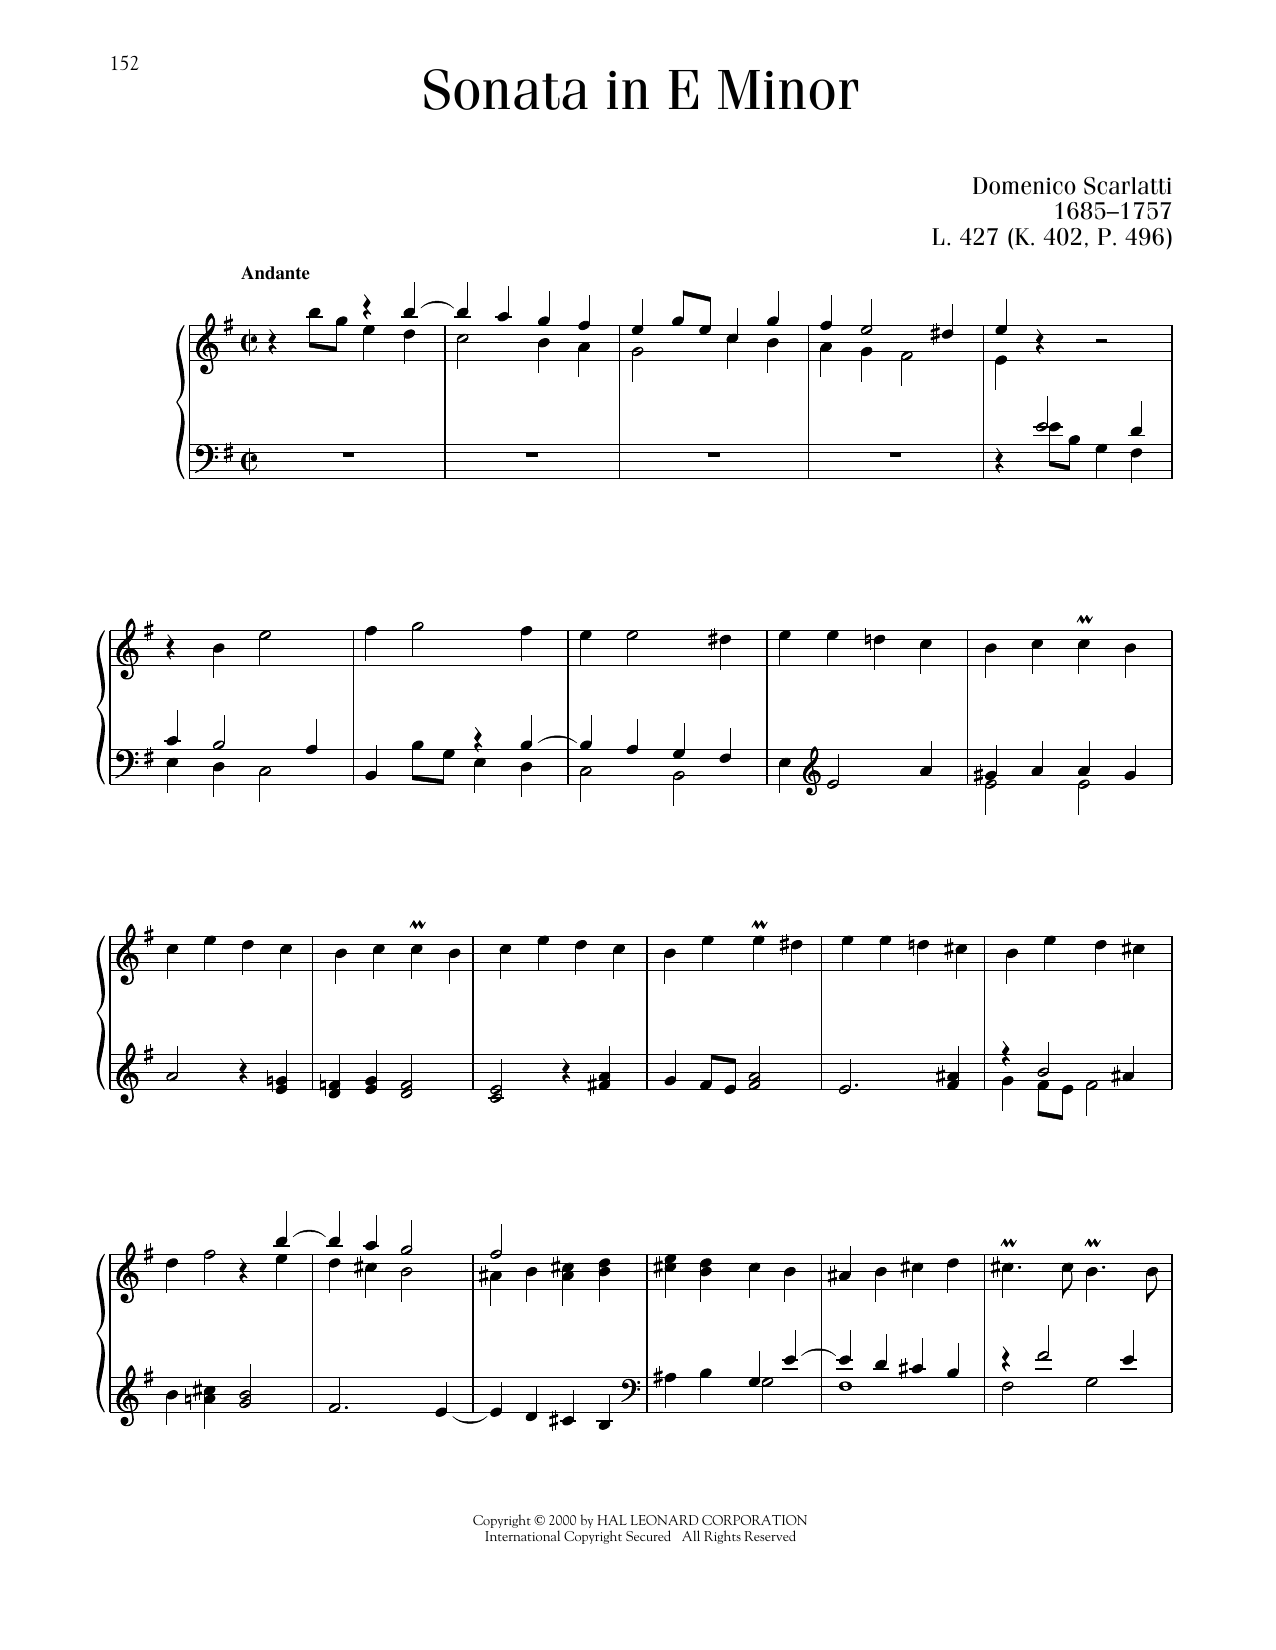 Domenico Scarlatti Sonata In E Minor, K. 402 sheet music notes and chords arranged for Piano Solo